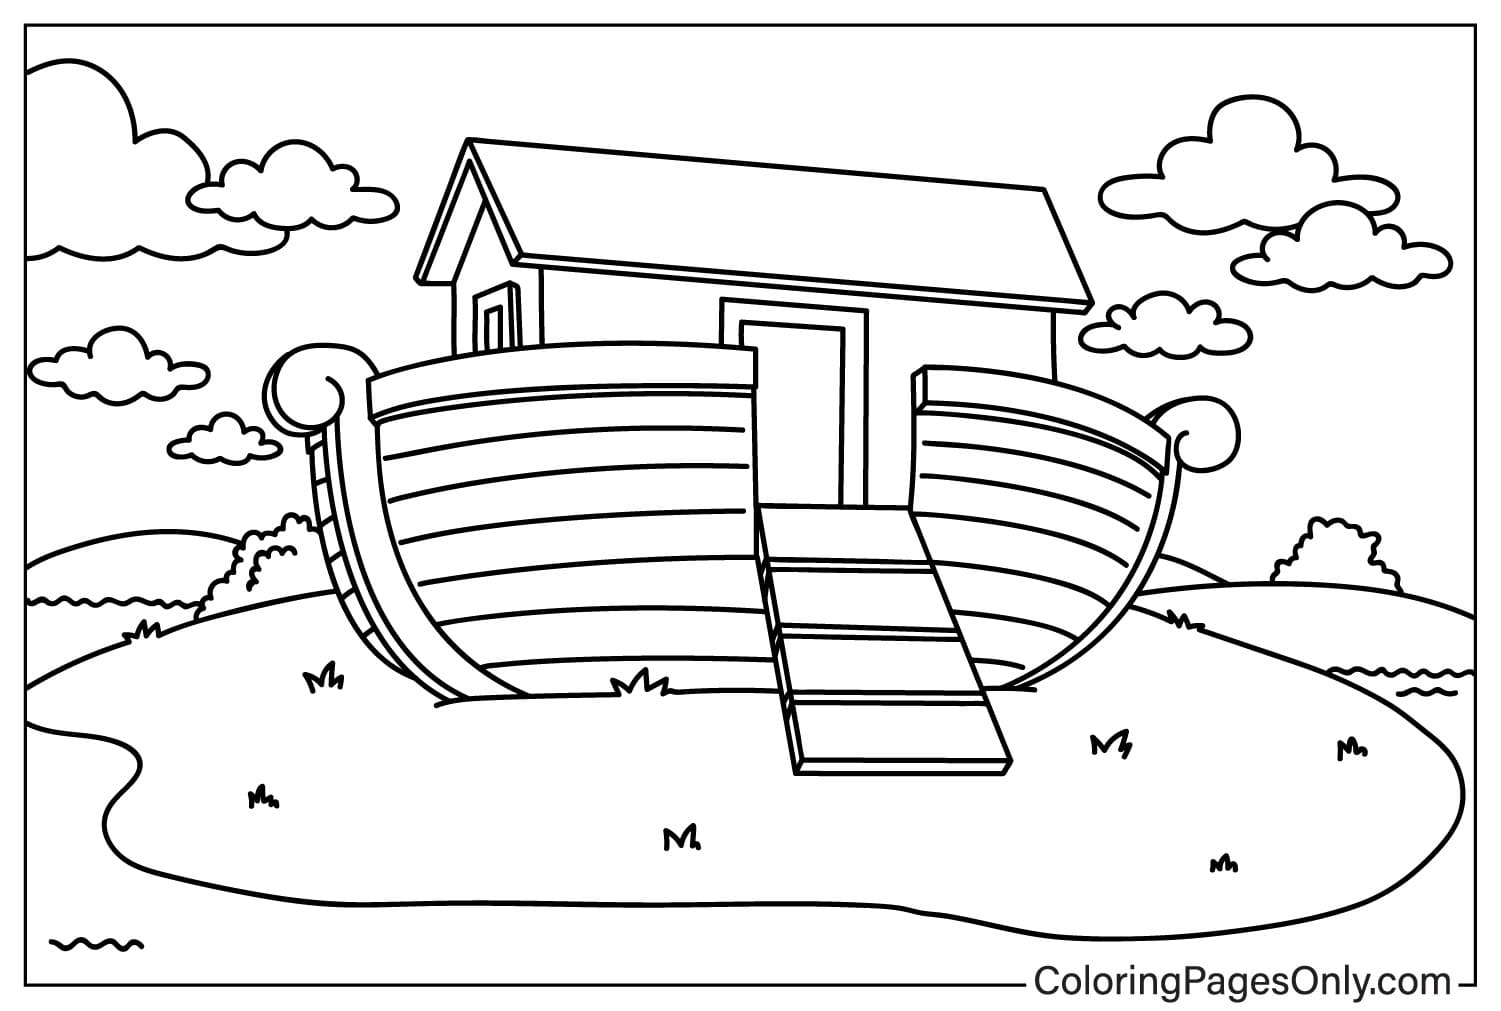 Página para colorir da Arca de Noé para crianças from Arca de Noé